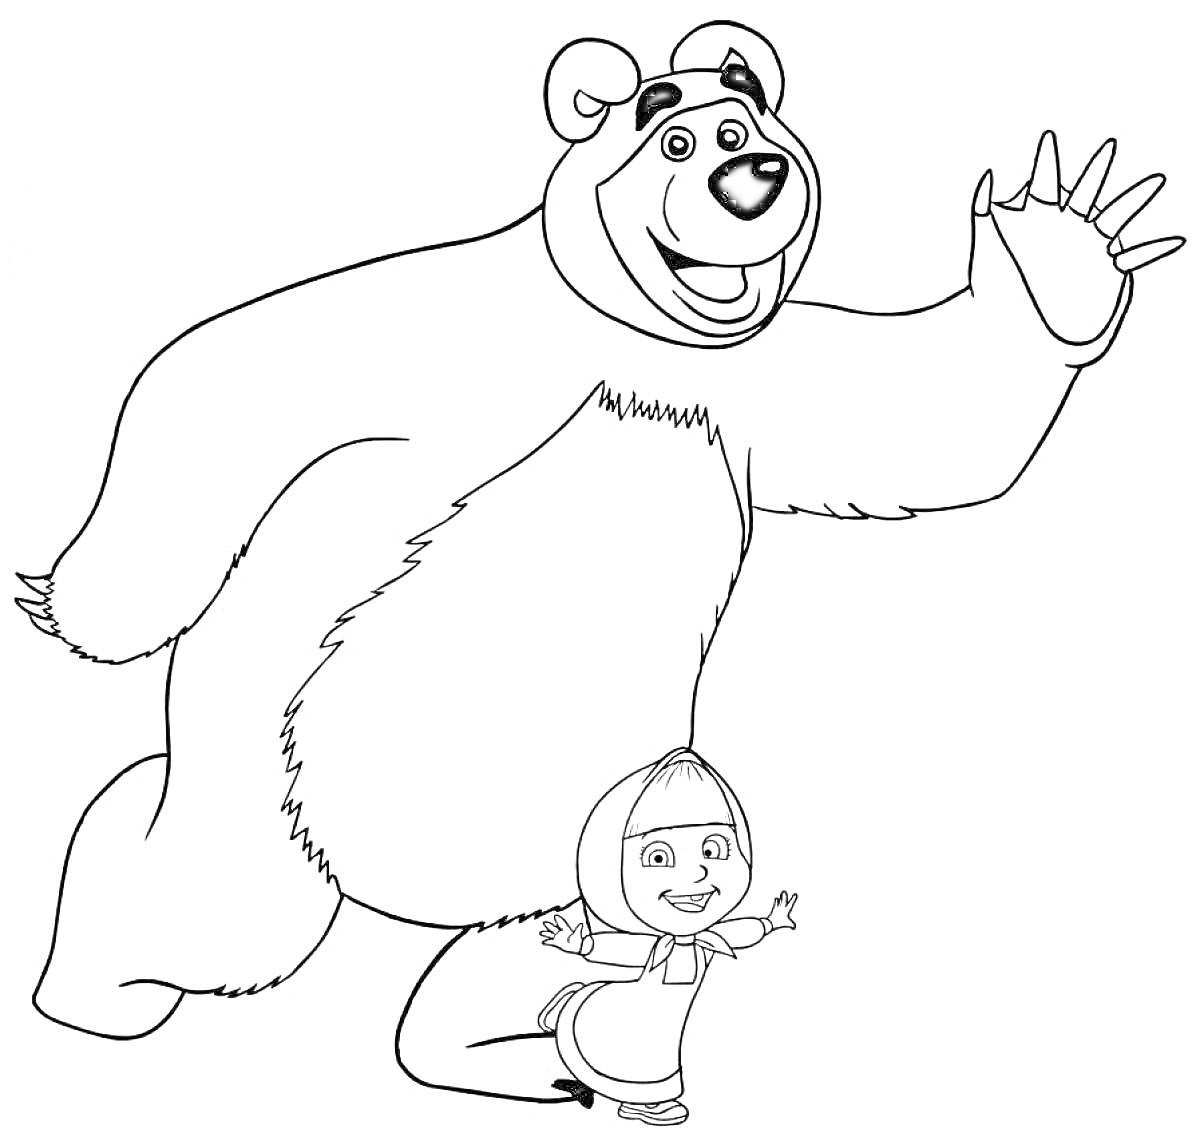 Раскраска Медведь в приветственном жесте и девочка в платочке